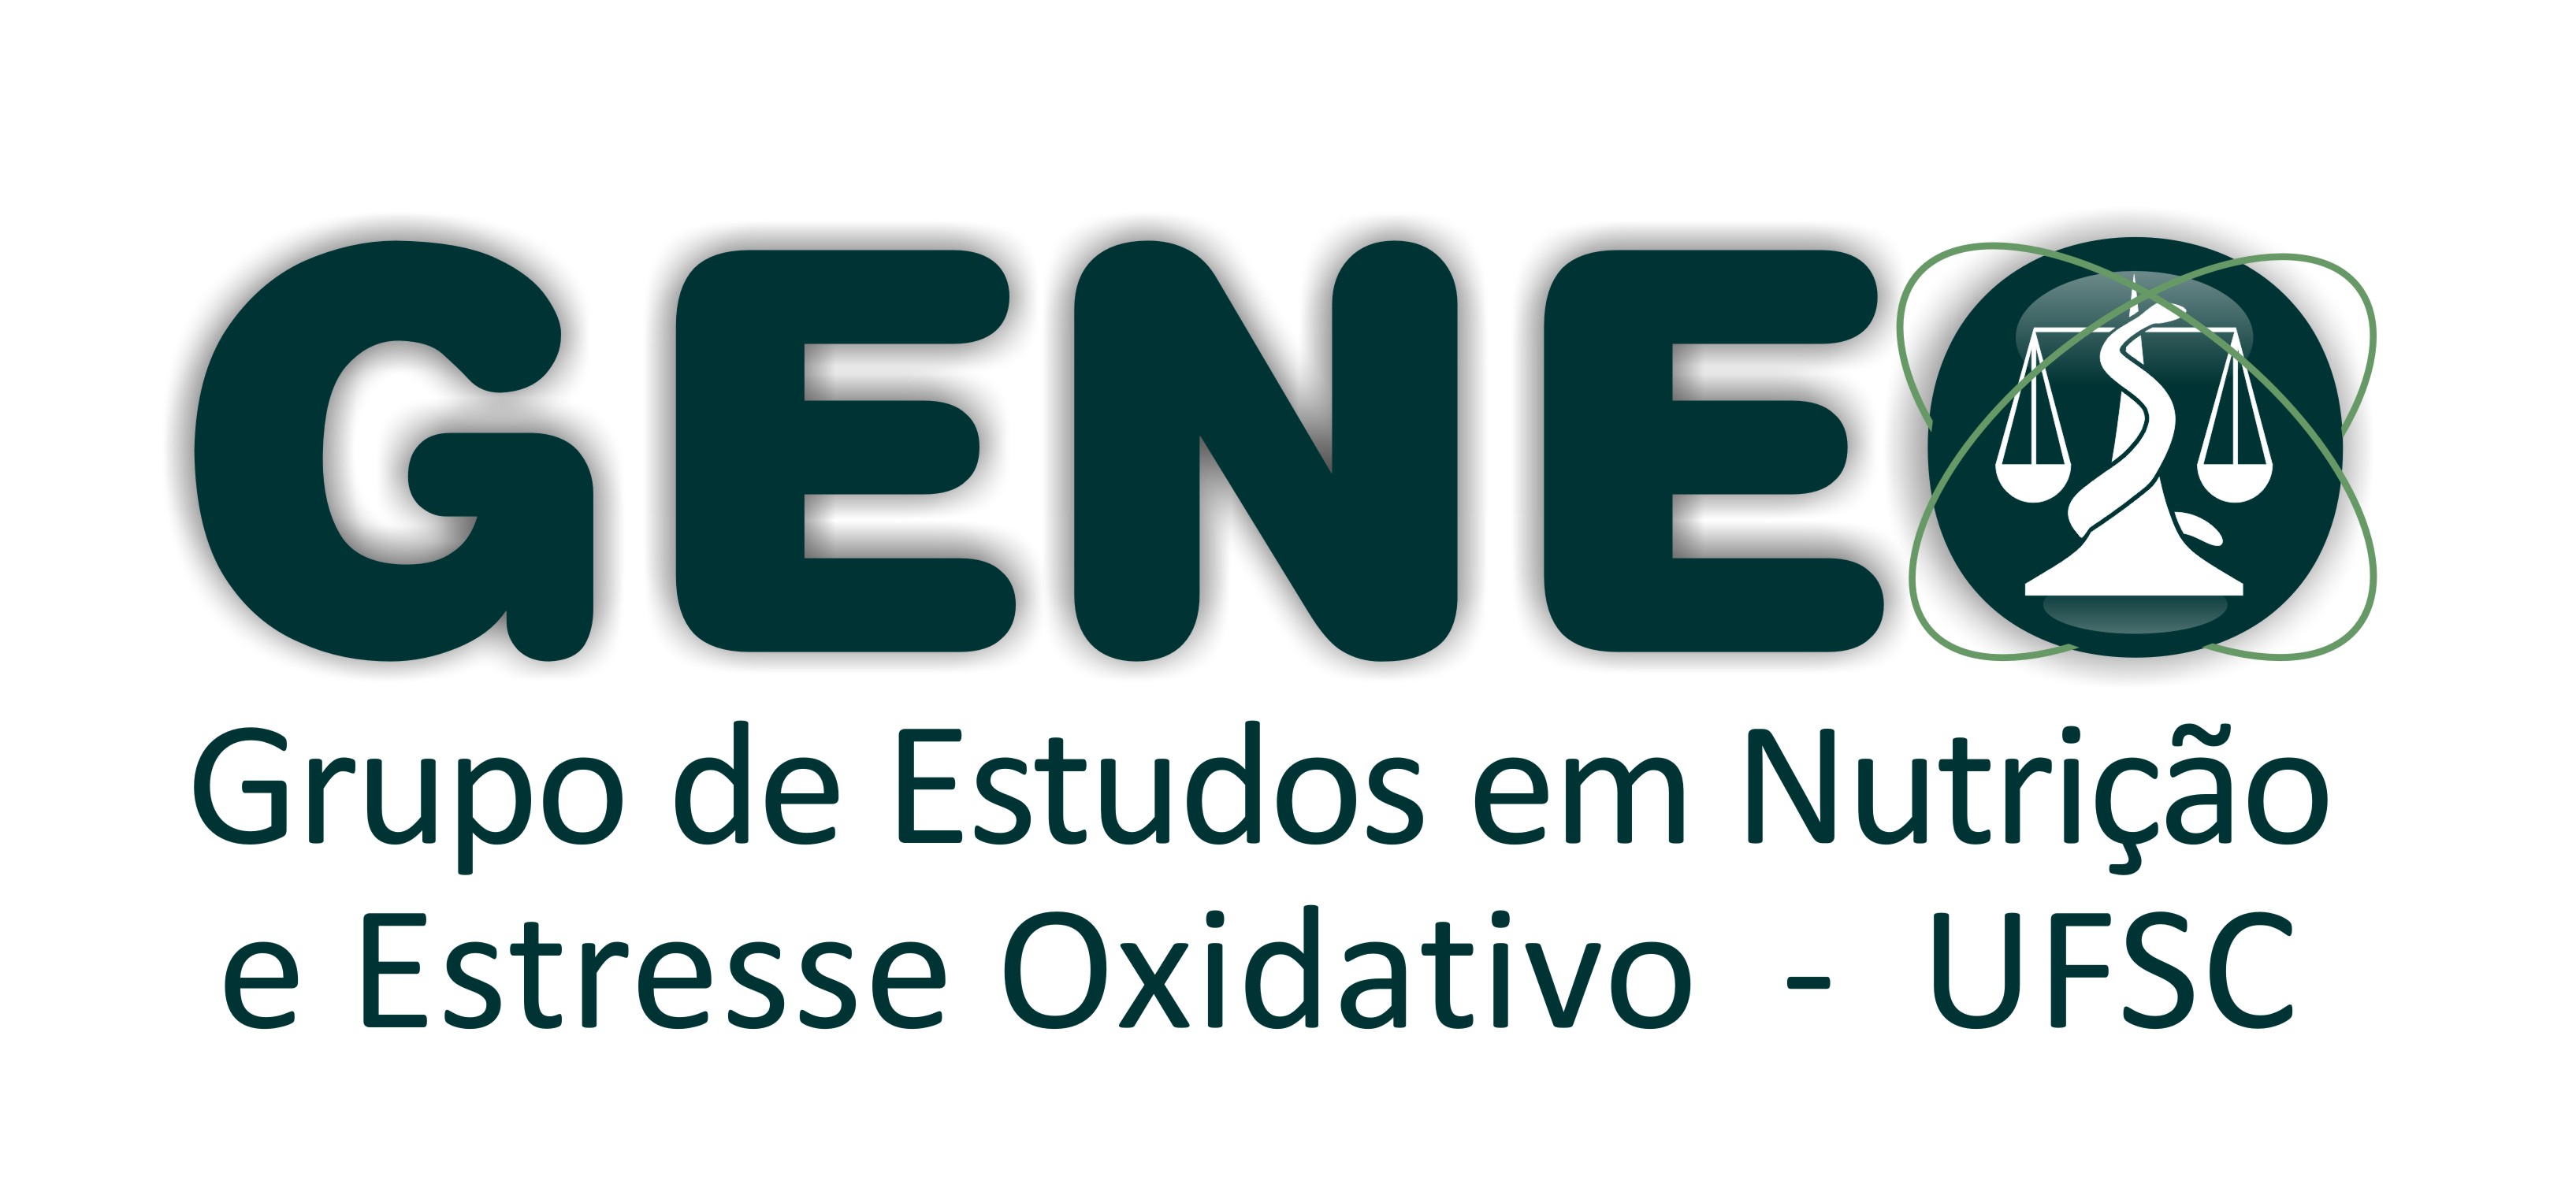 Grupo de Estudos em Nutrição e Estresse Oxidativo da Universidade Federal de Santa Catarina UFSC